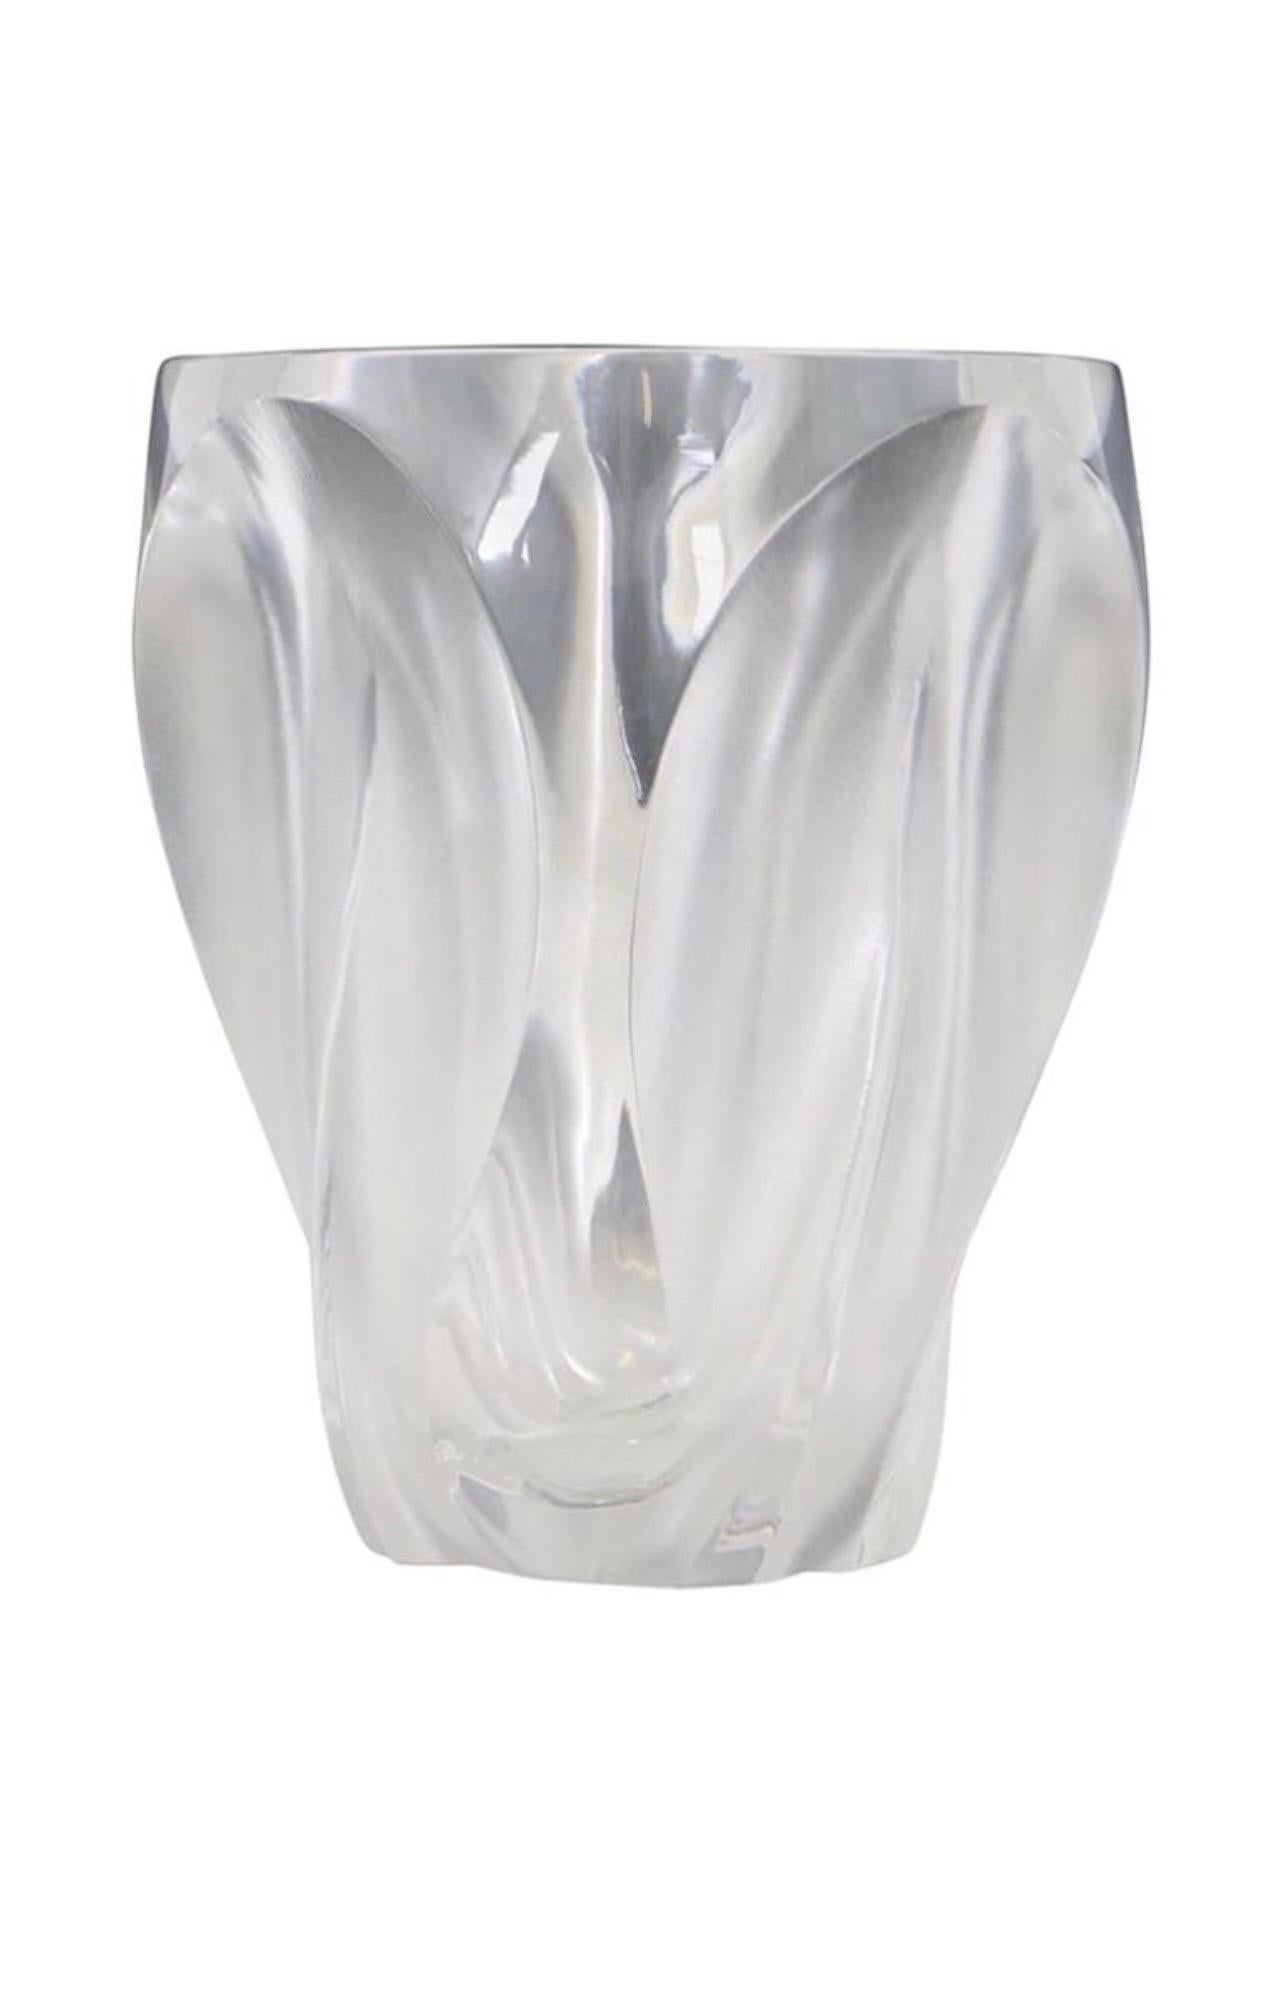 A wonderful Lalique France 